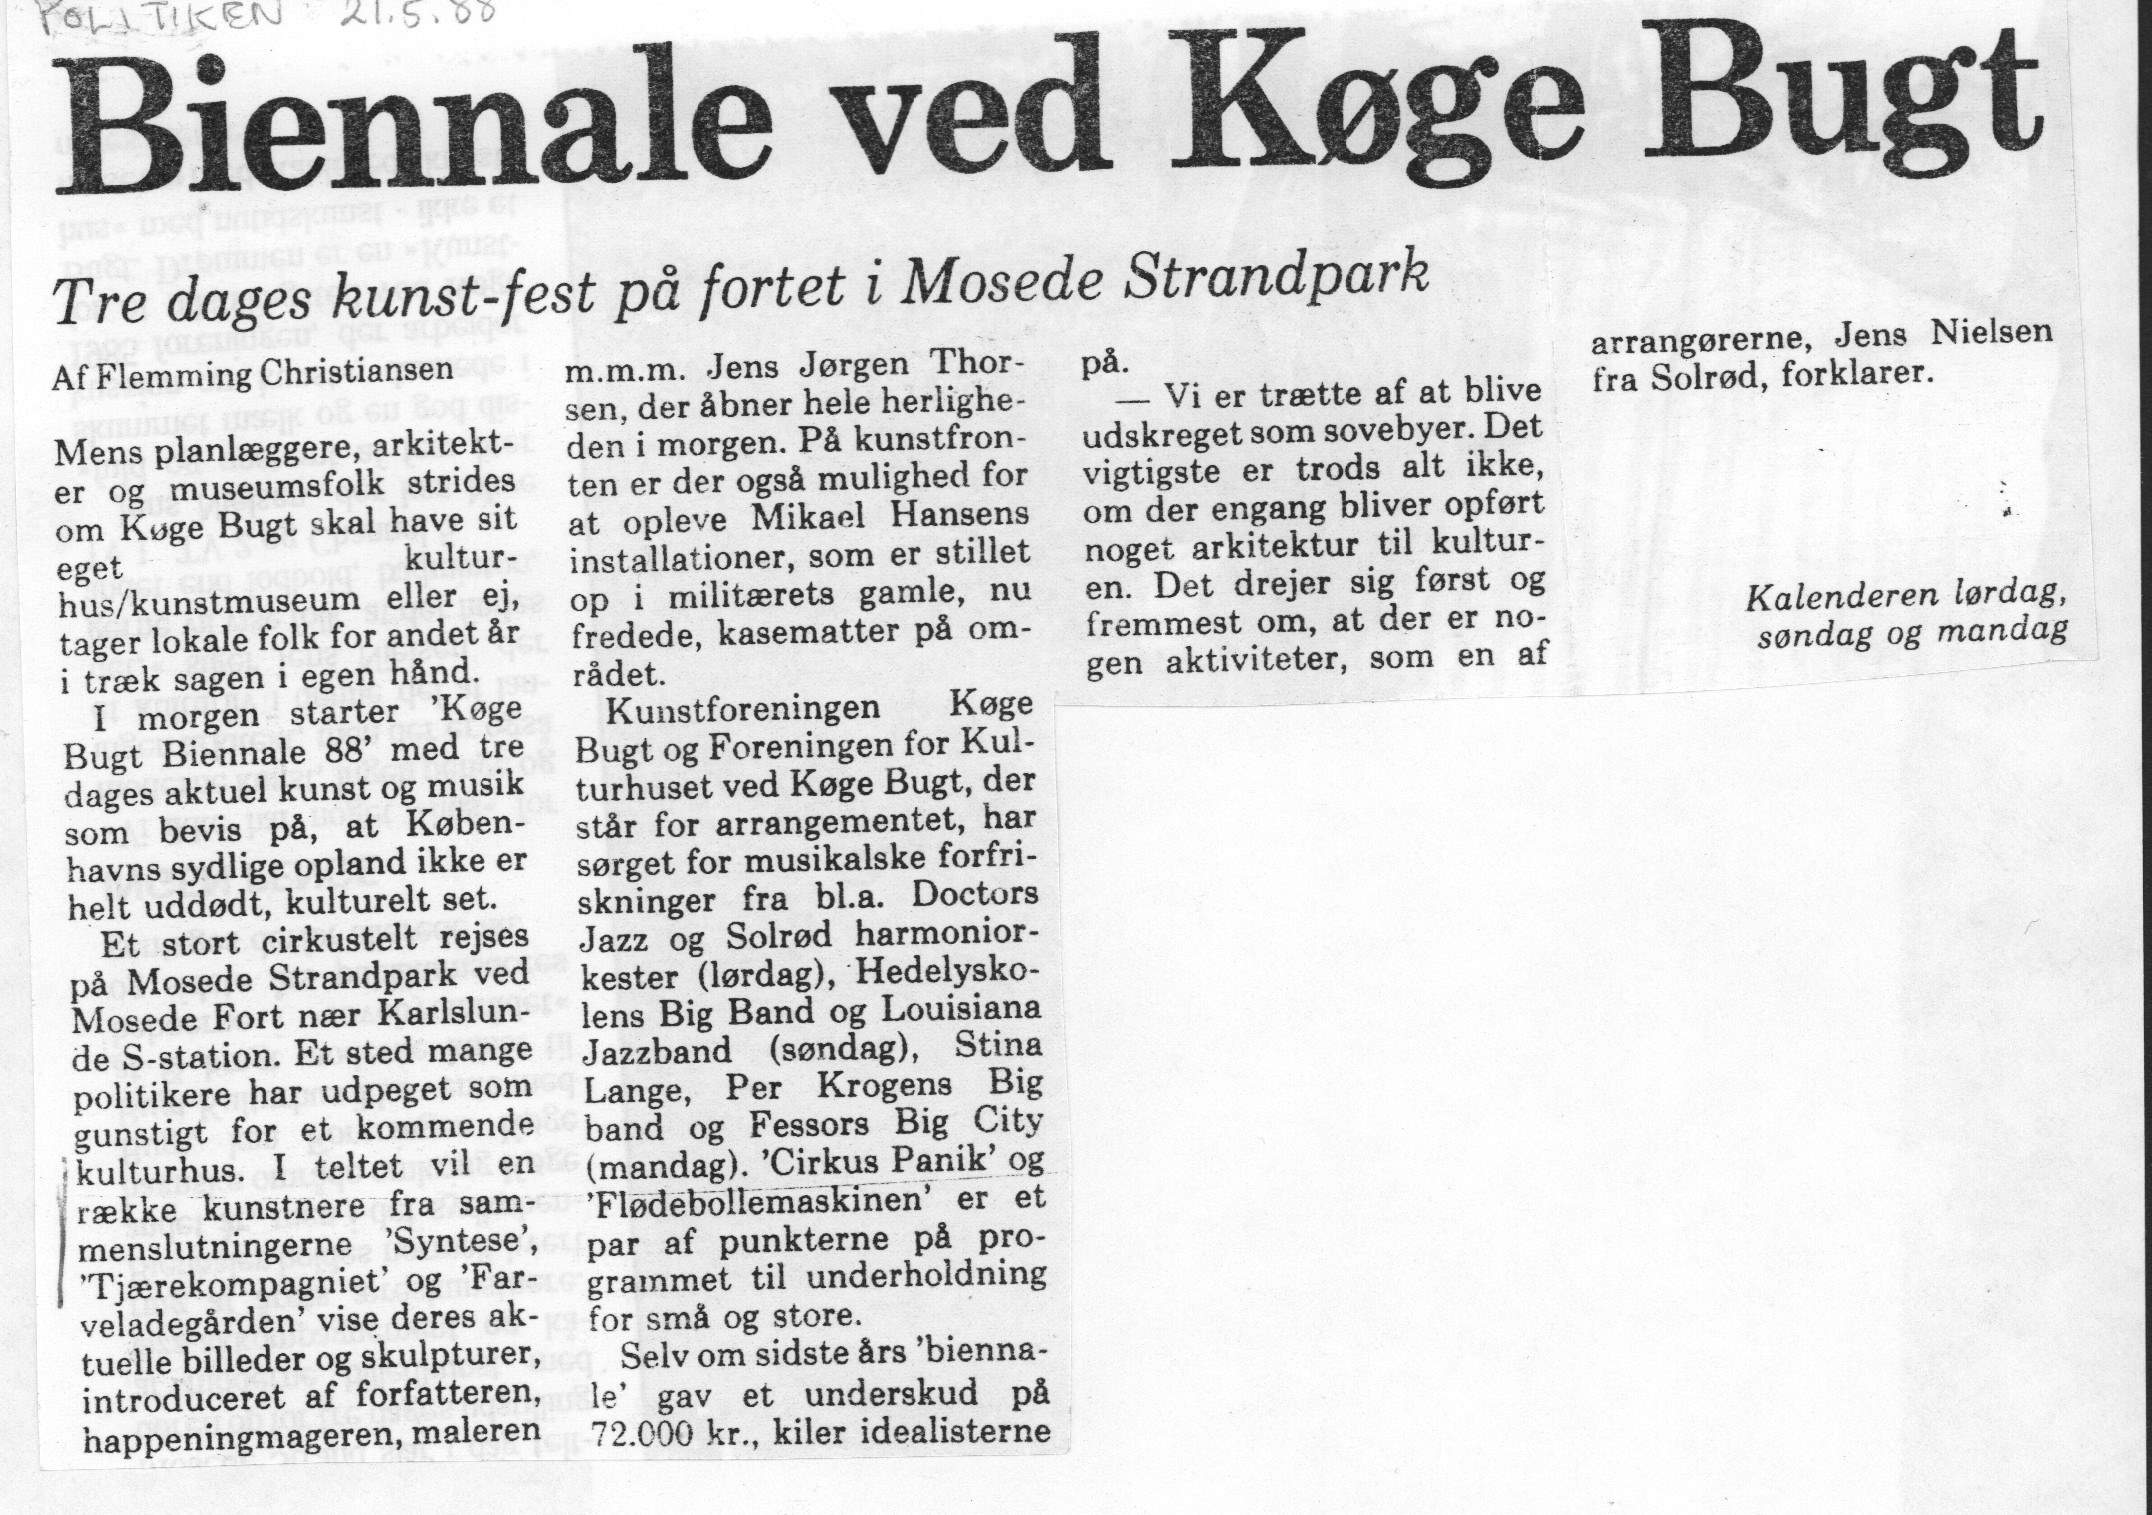 Biennale ved Køge Bugt. Omtale (Køge Bugt Biennale 88. Mosede Strandpark, Køge). Flemming Christiansen. Politikken.